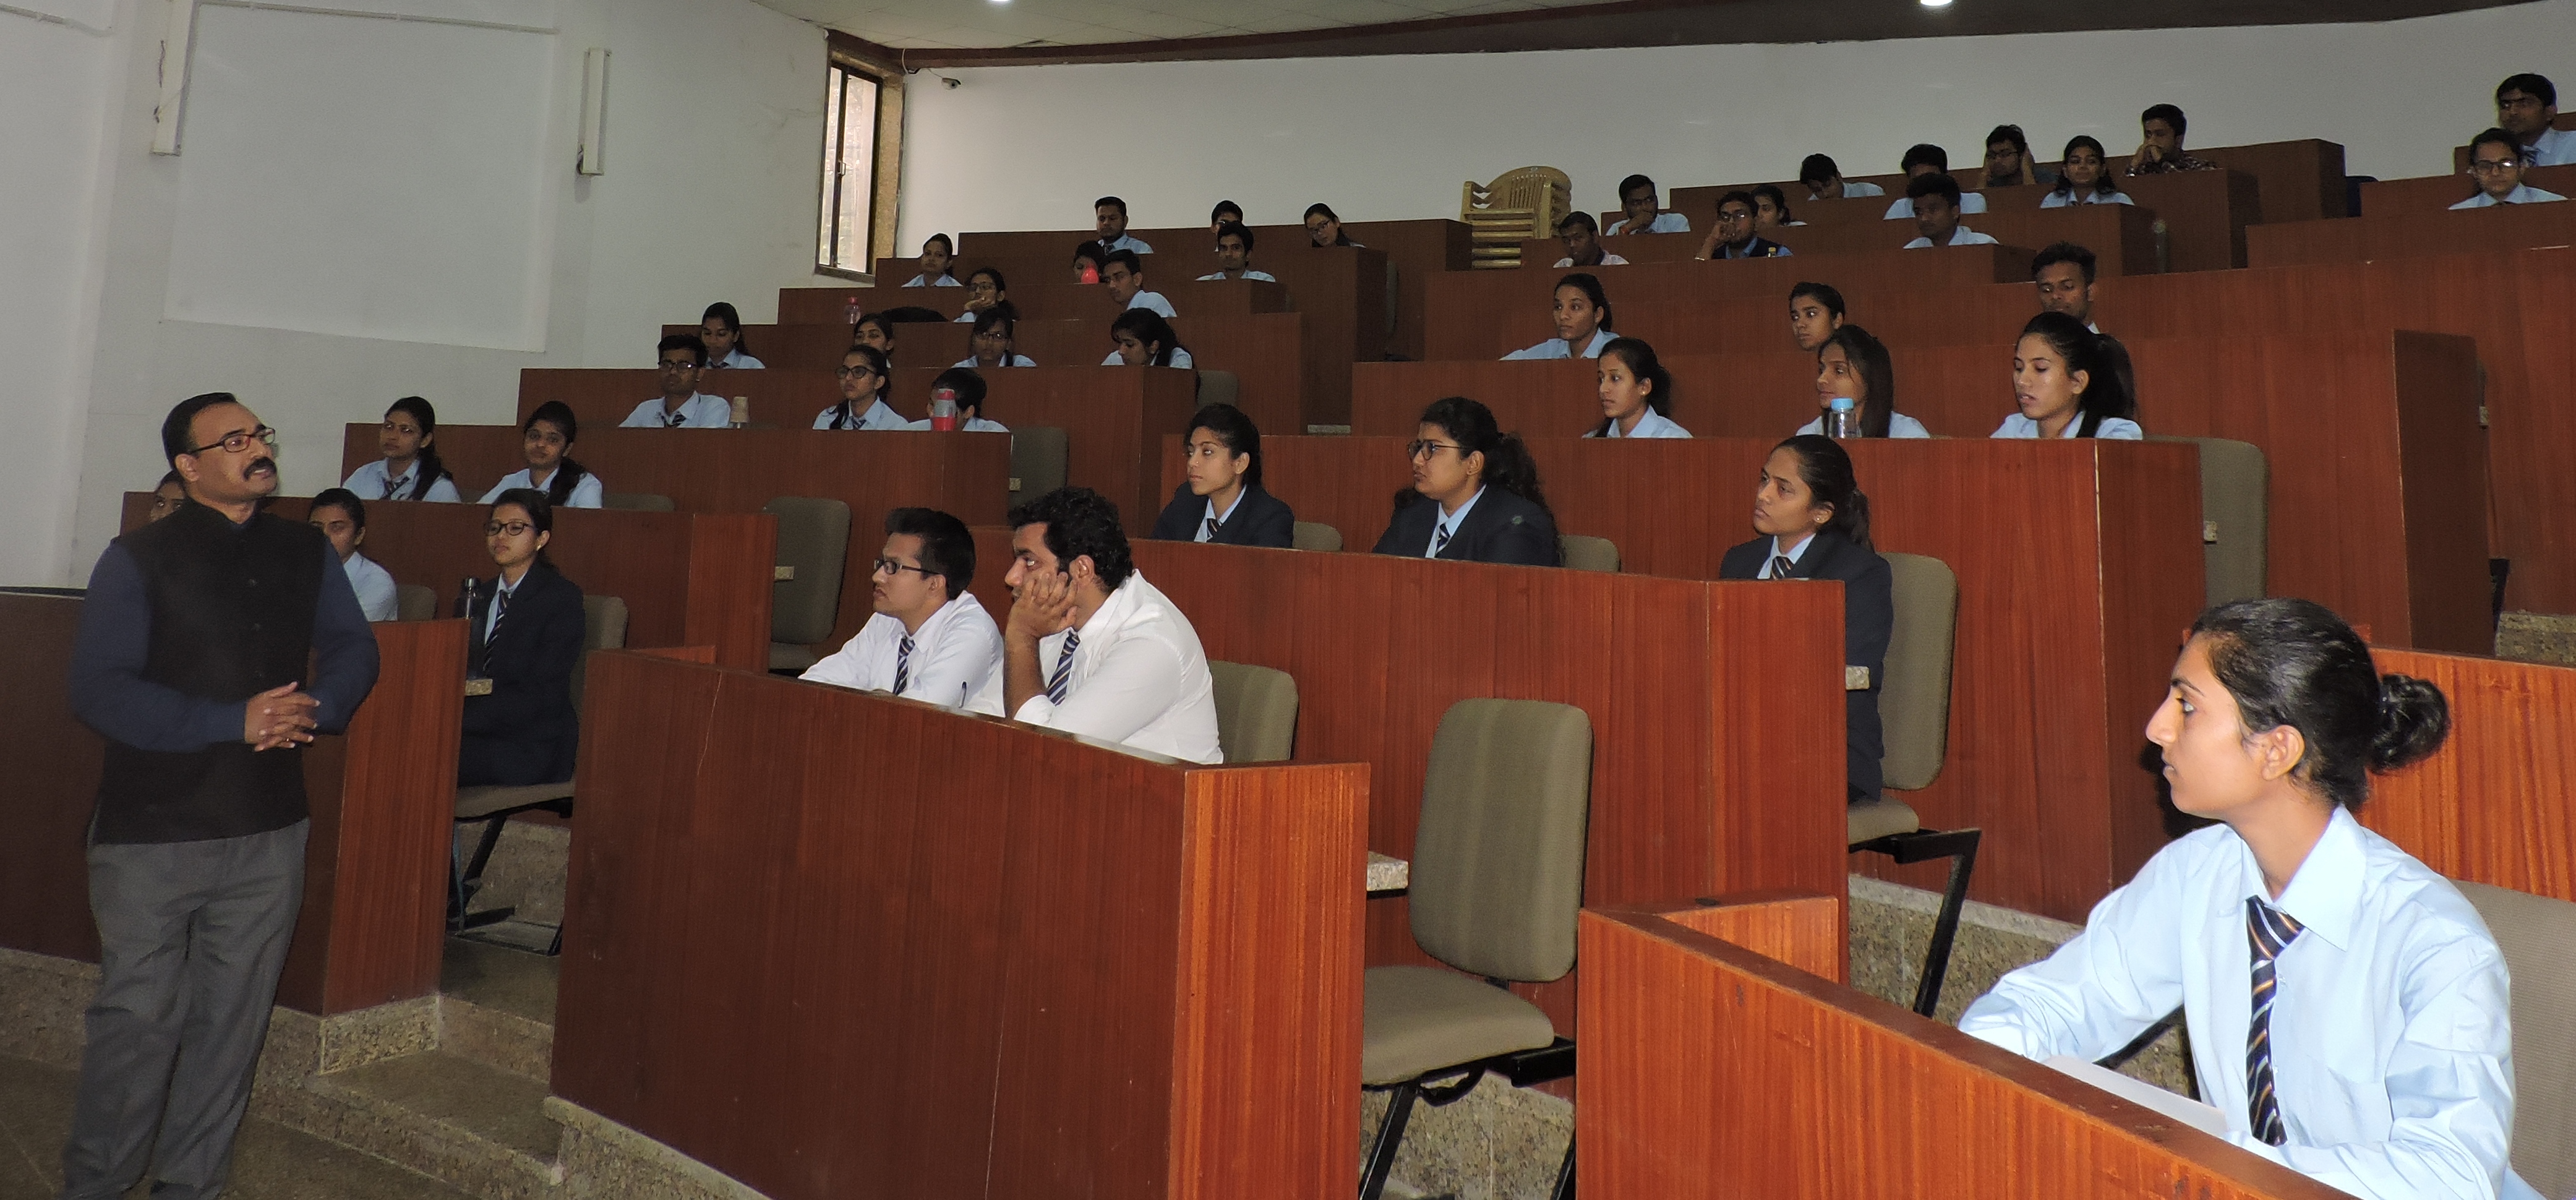 पेसिफिक बिजनेस स्कूल, आरटीयू के टाॅप पाँच मैनजमेंट संस्थानों में व दक्षिणी राजस्थान में प्रथम